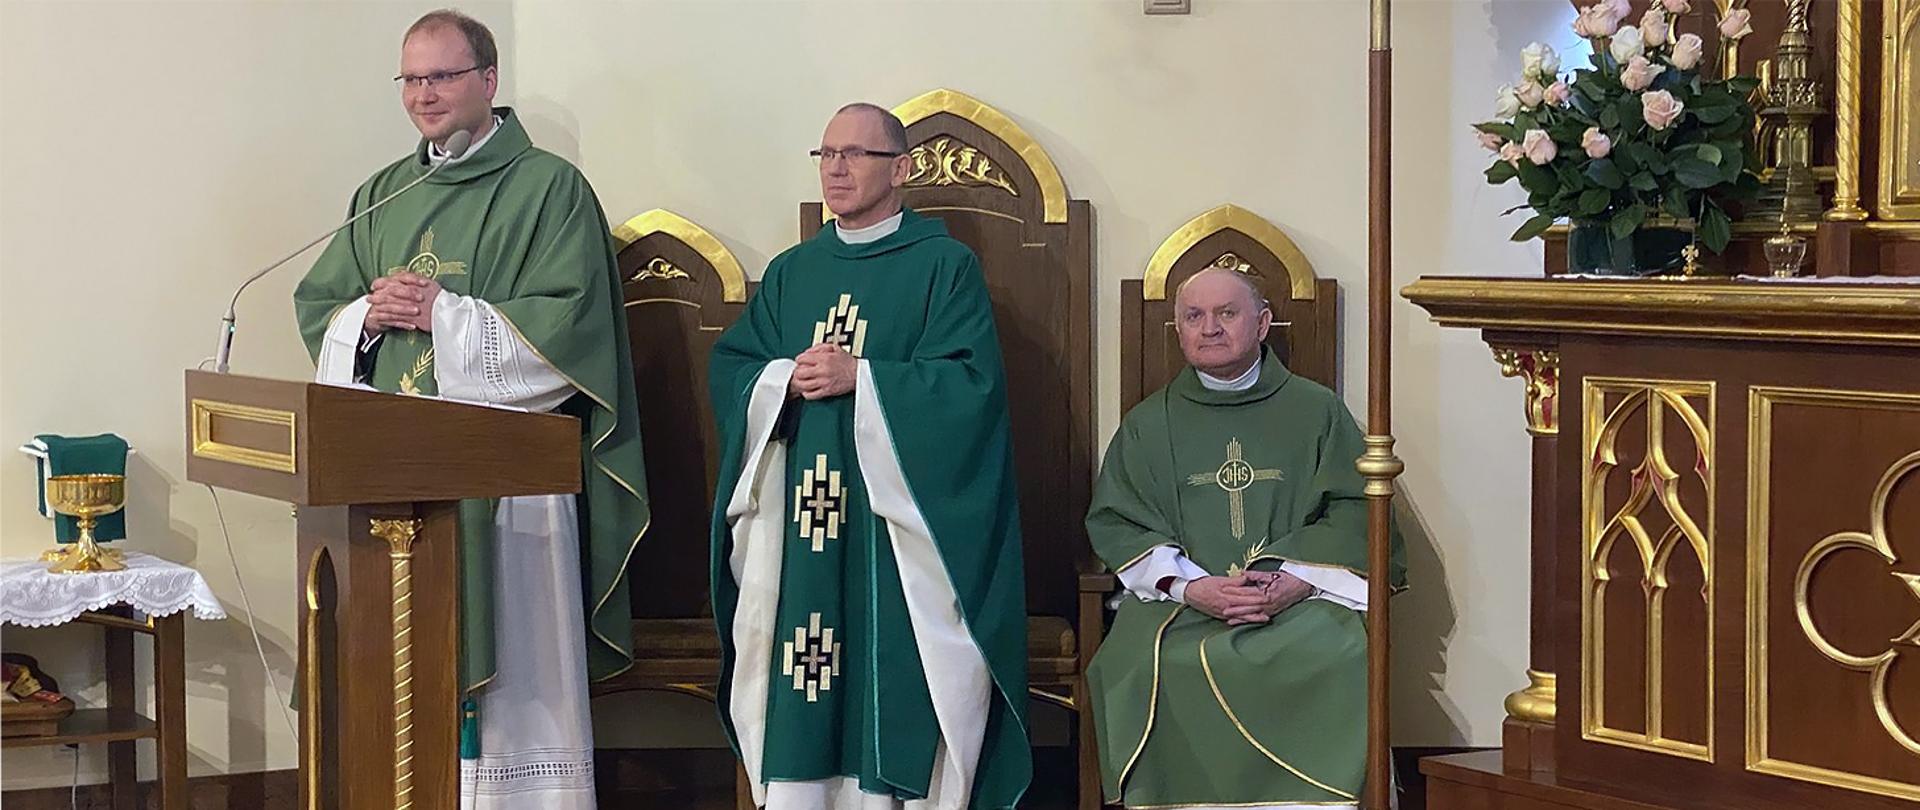 Trzej księża przy ołtarzu w zielonych ornatach